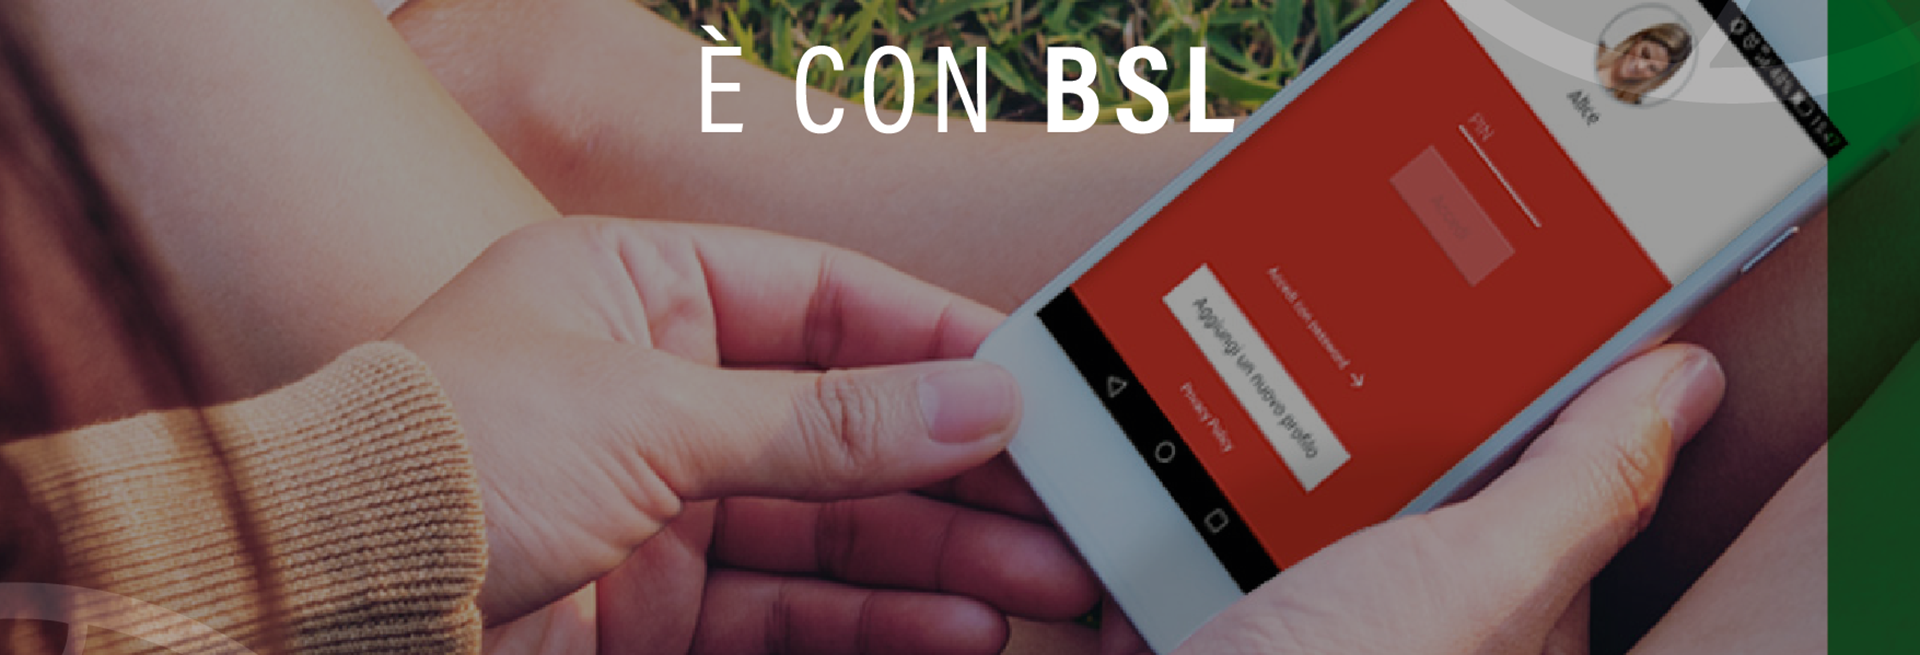 BSL SOCIAL Banca Di Bologna